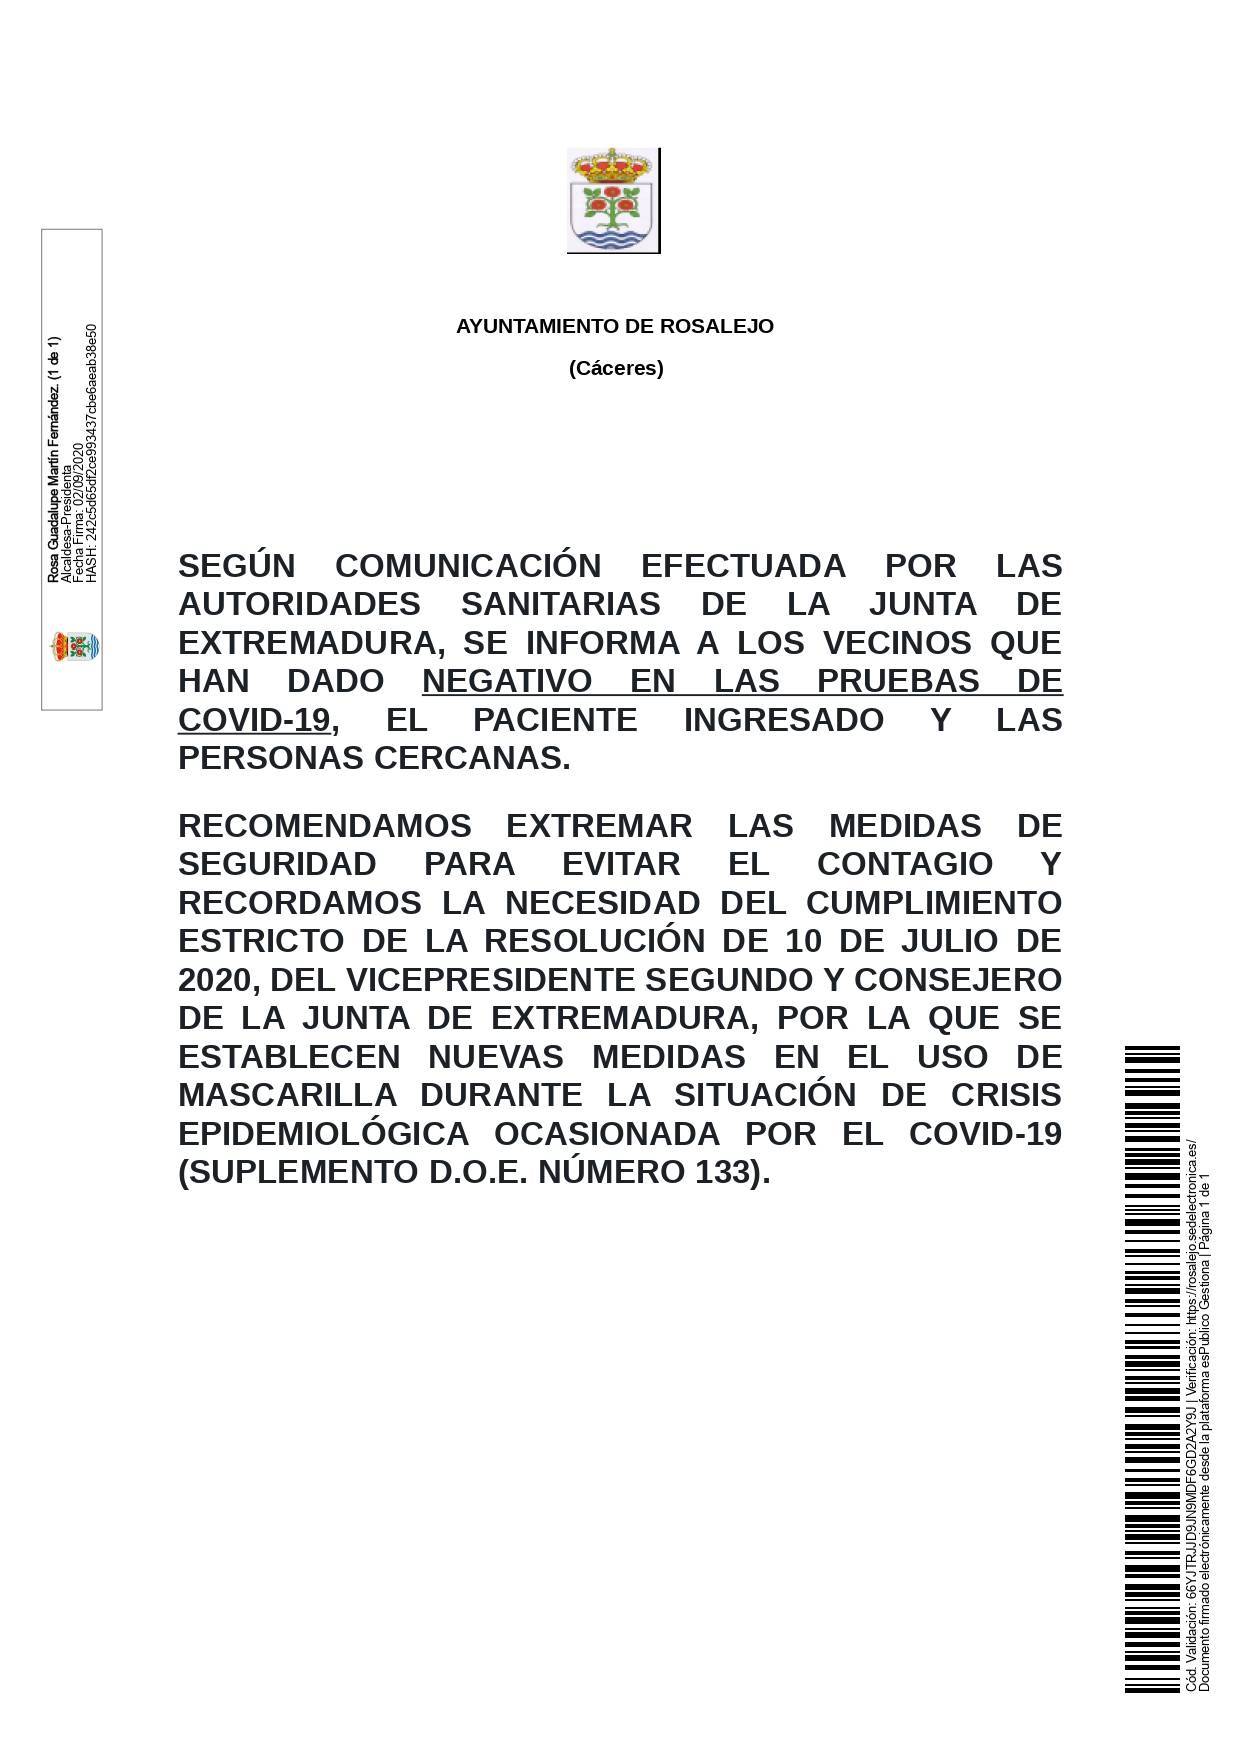 Un recuperado por coronavirus (septiembre 2020) - Rosalejo (Cáceres)